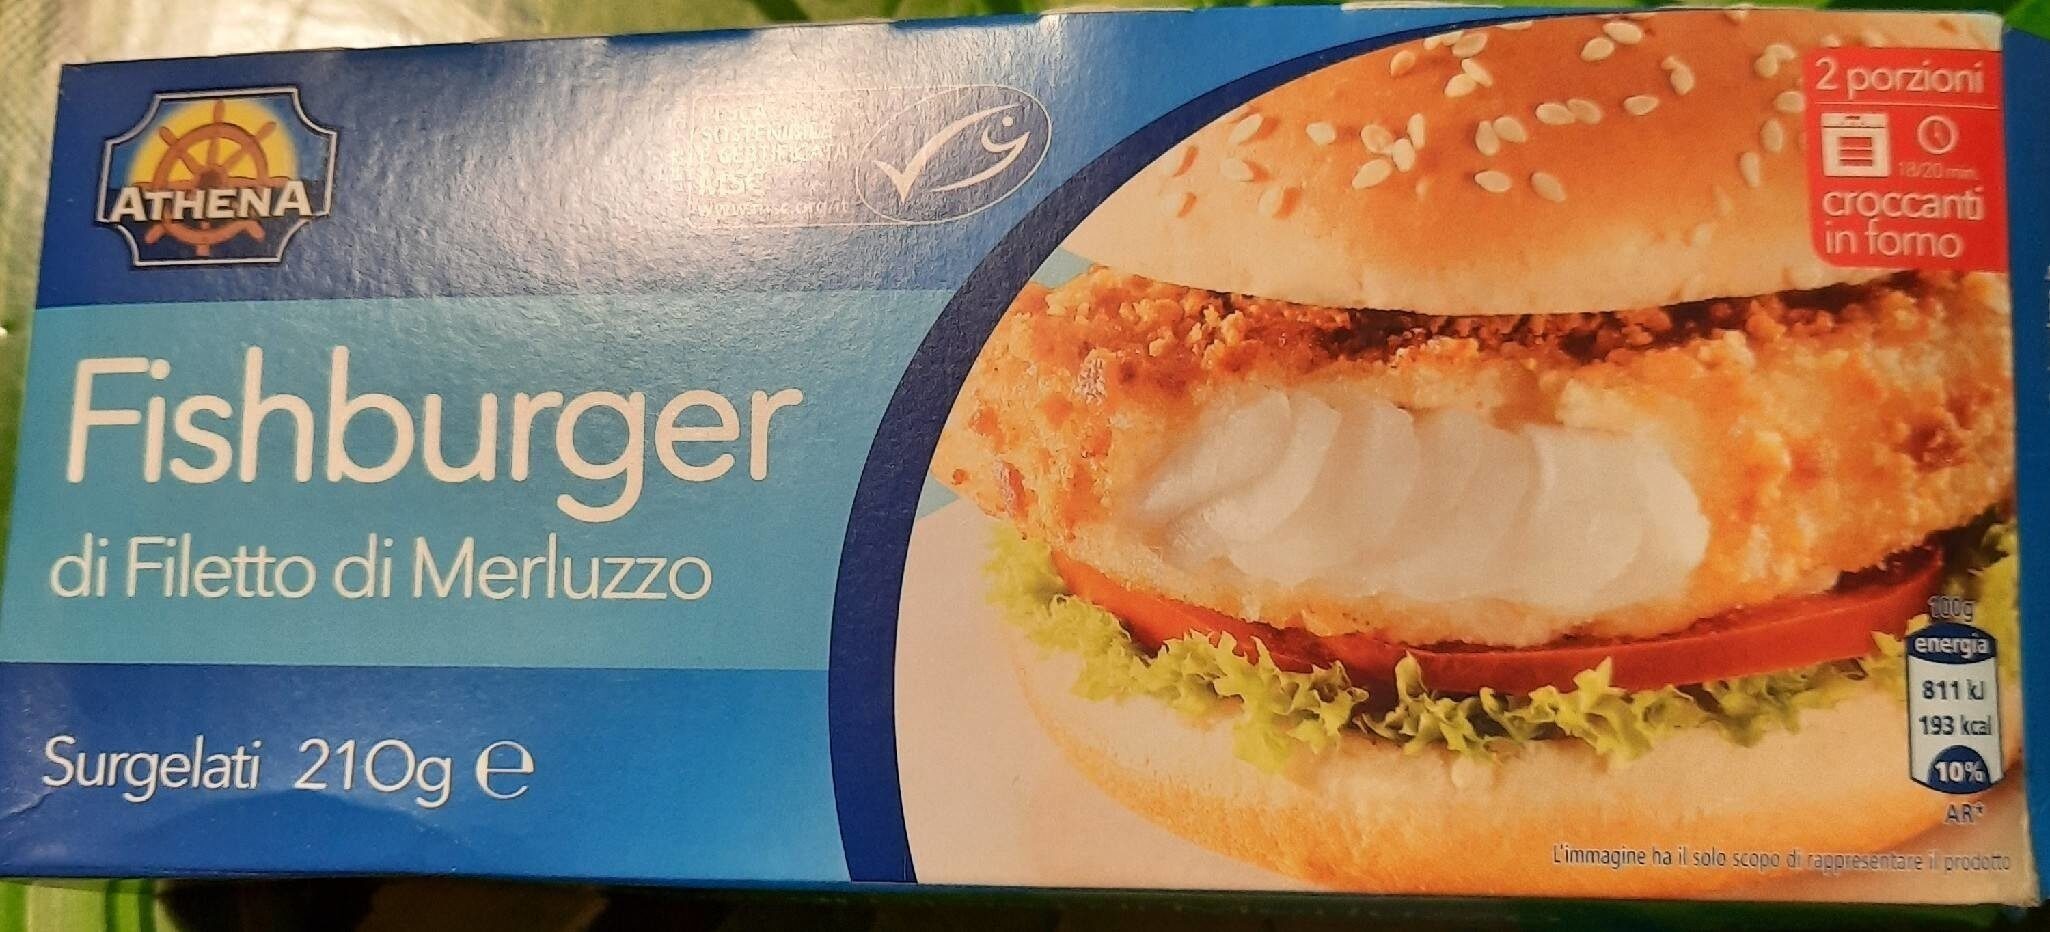 Fishburger di filetto di merluzzo - Product - it